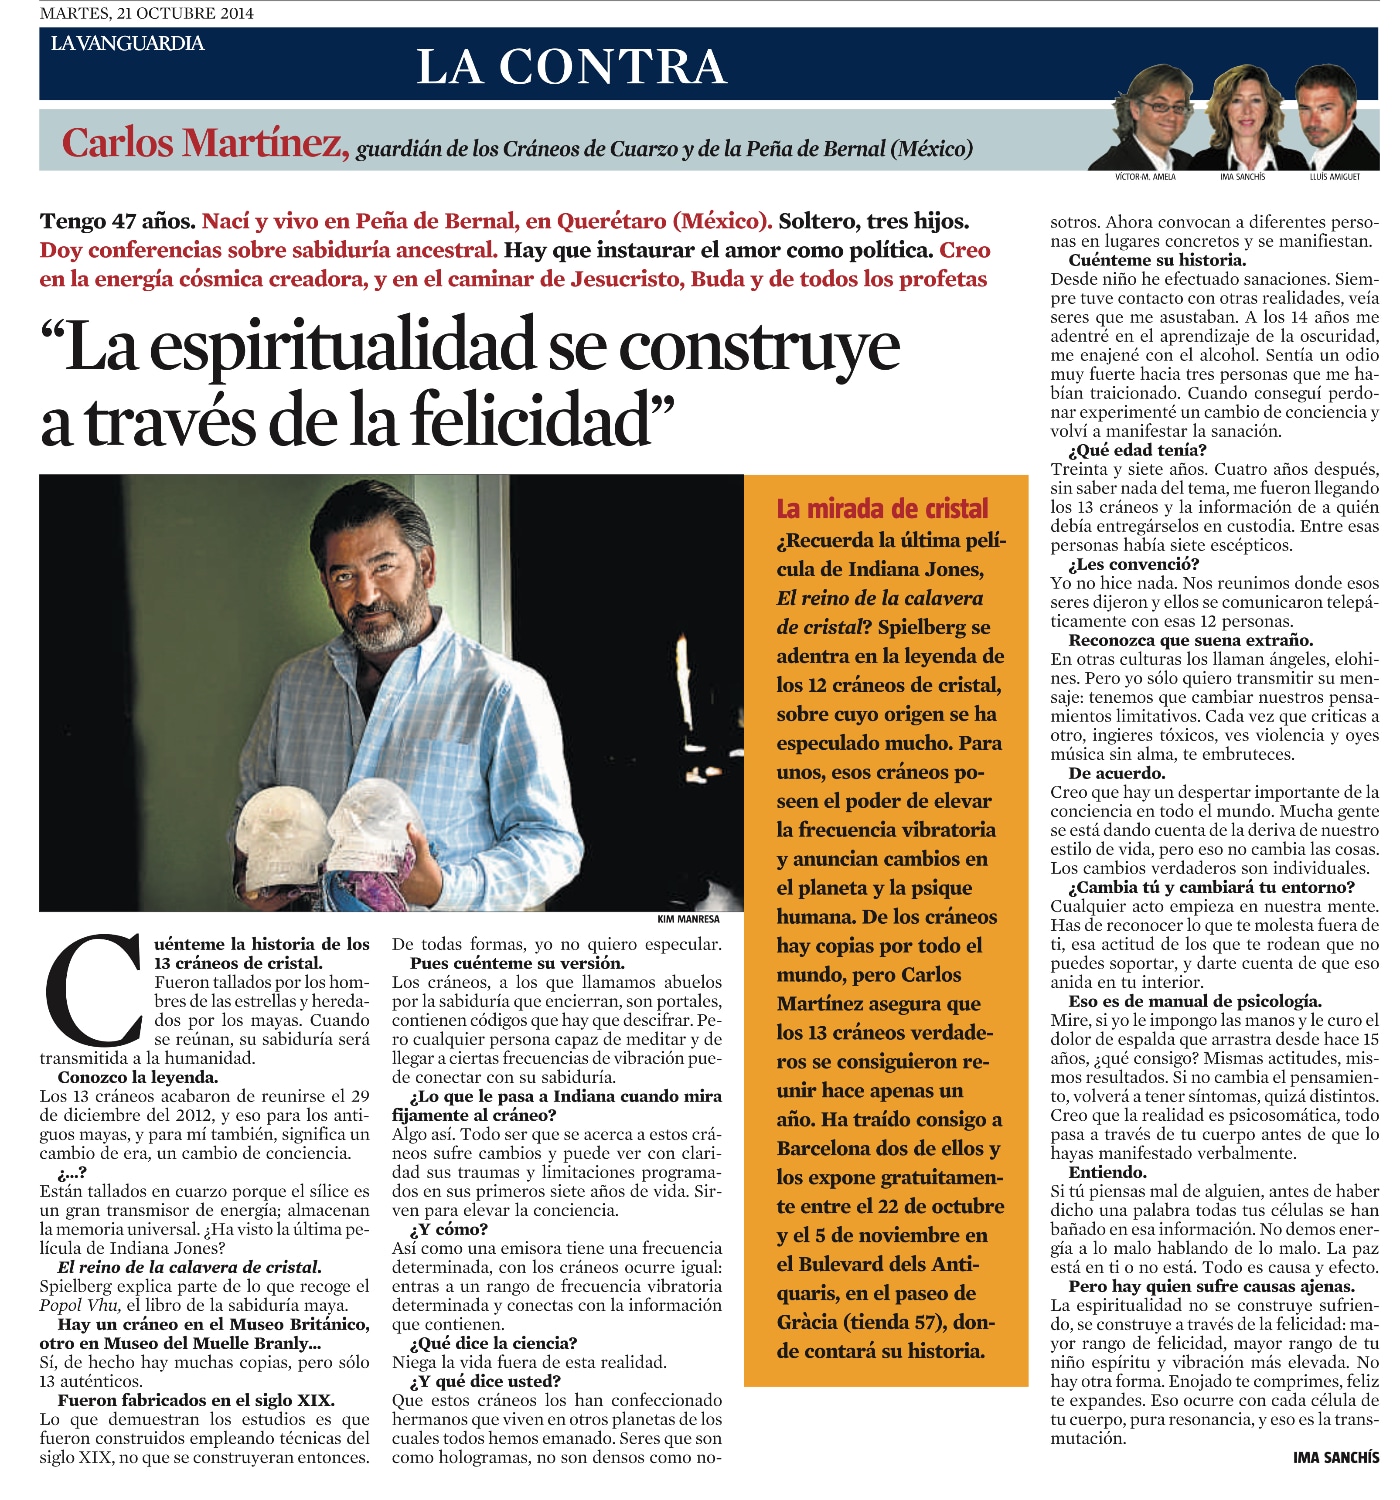 Entrevista a Carlos Martínez, guardián de los cráneos de cuarzo, en 'La Vanguardia'.